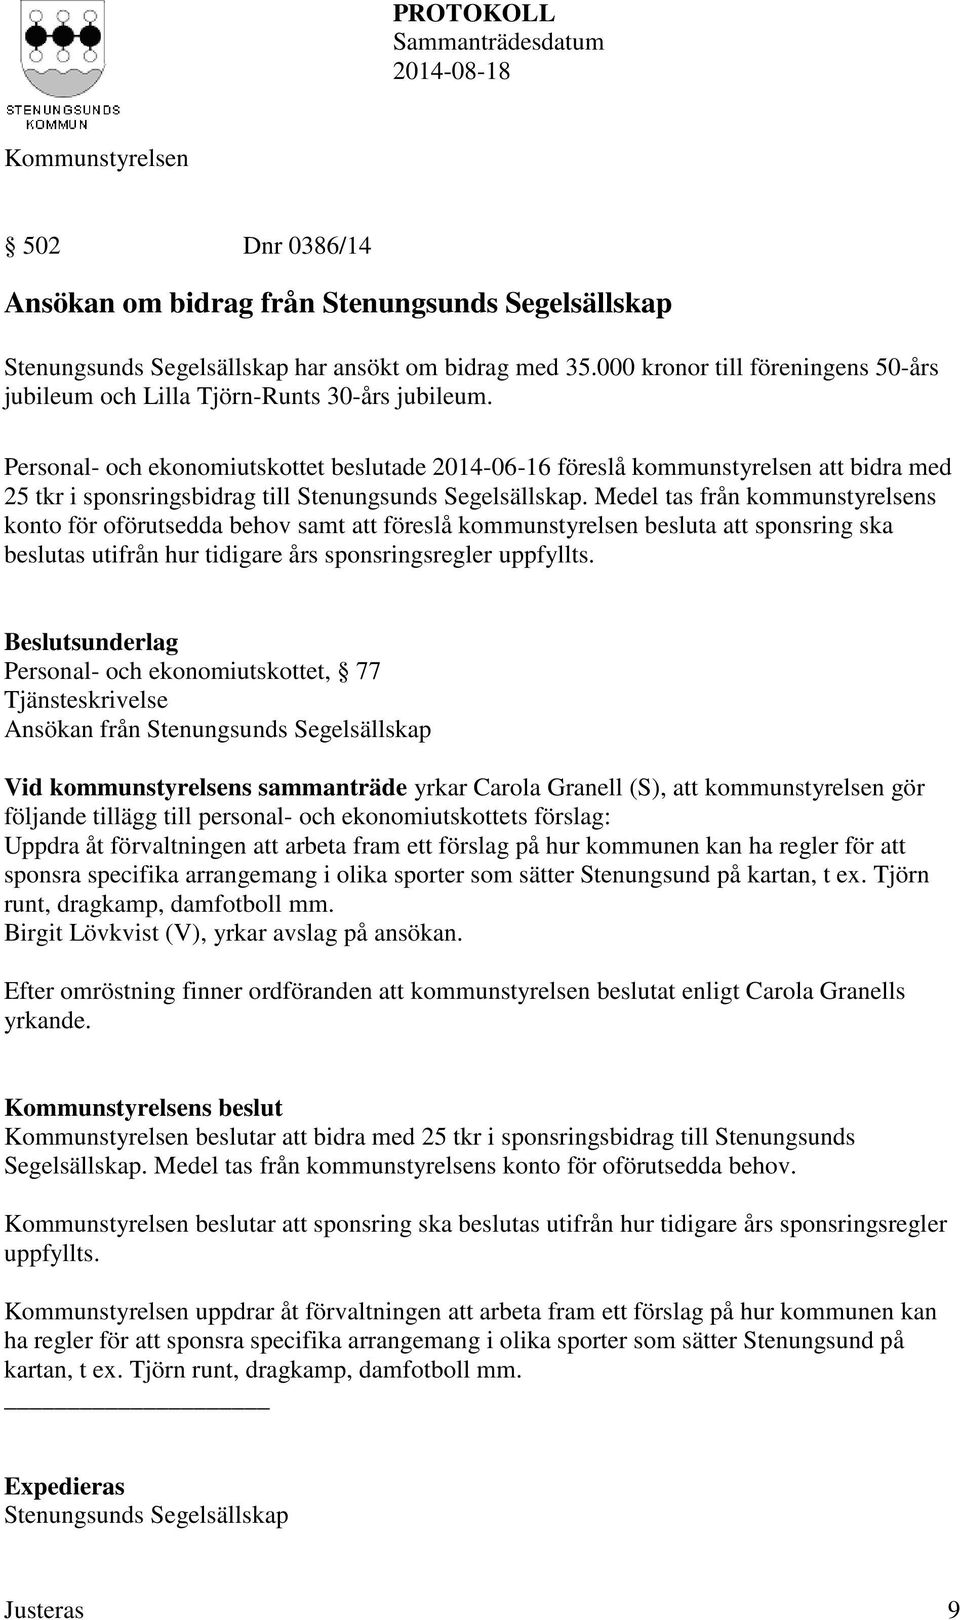 Personal- och ekonomiutskottet beslutade 2014-06-16 föreslå kommunstyrelsen att bidra med 25 tkr i sponsringsbidrag till Stenungsunds Segelsällskap.